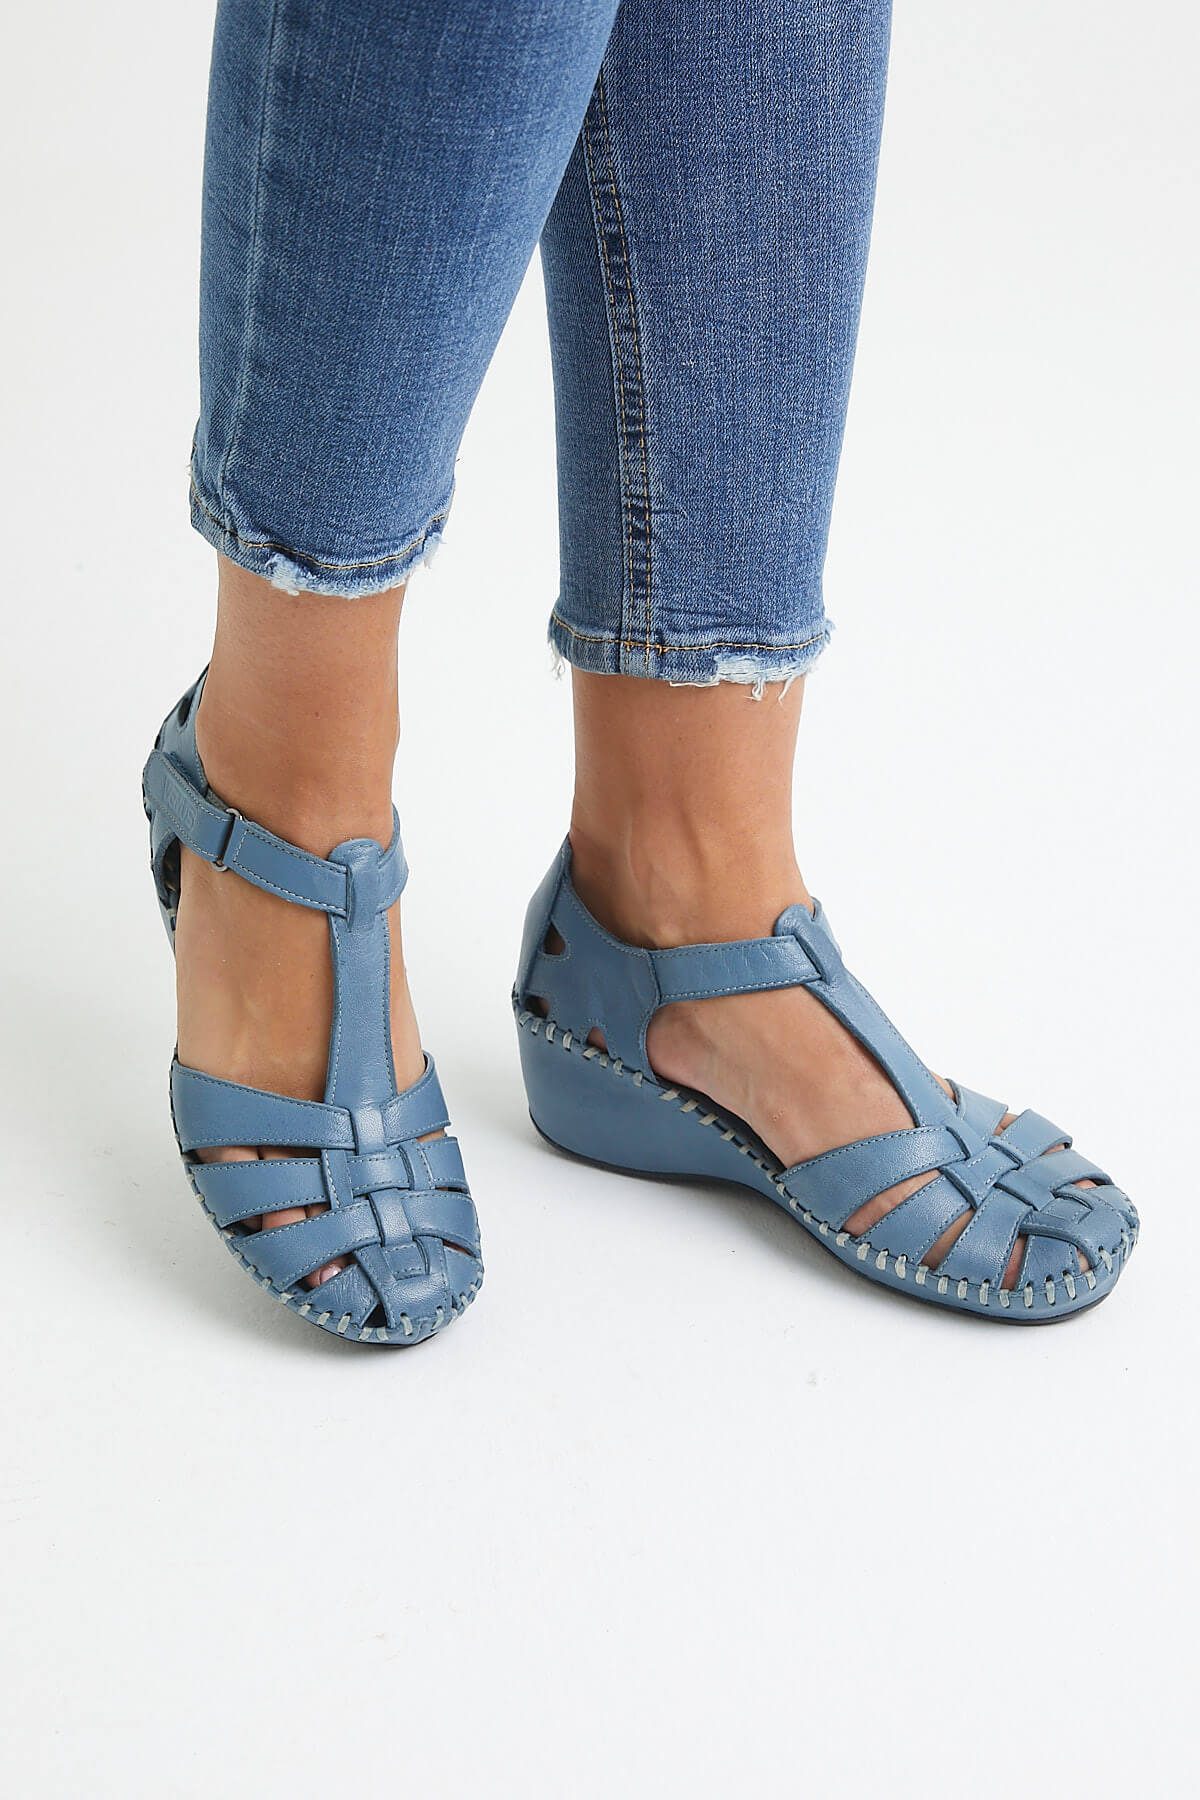 Kadın Comfort Deri Sandalet Mavi 18791382